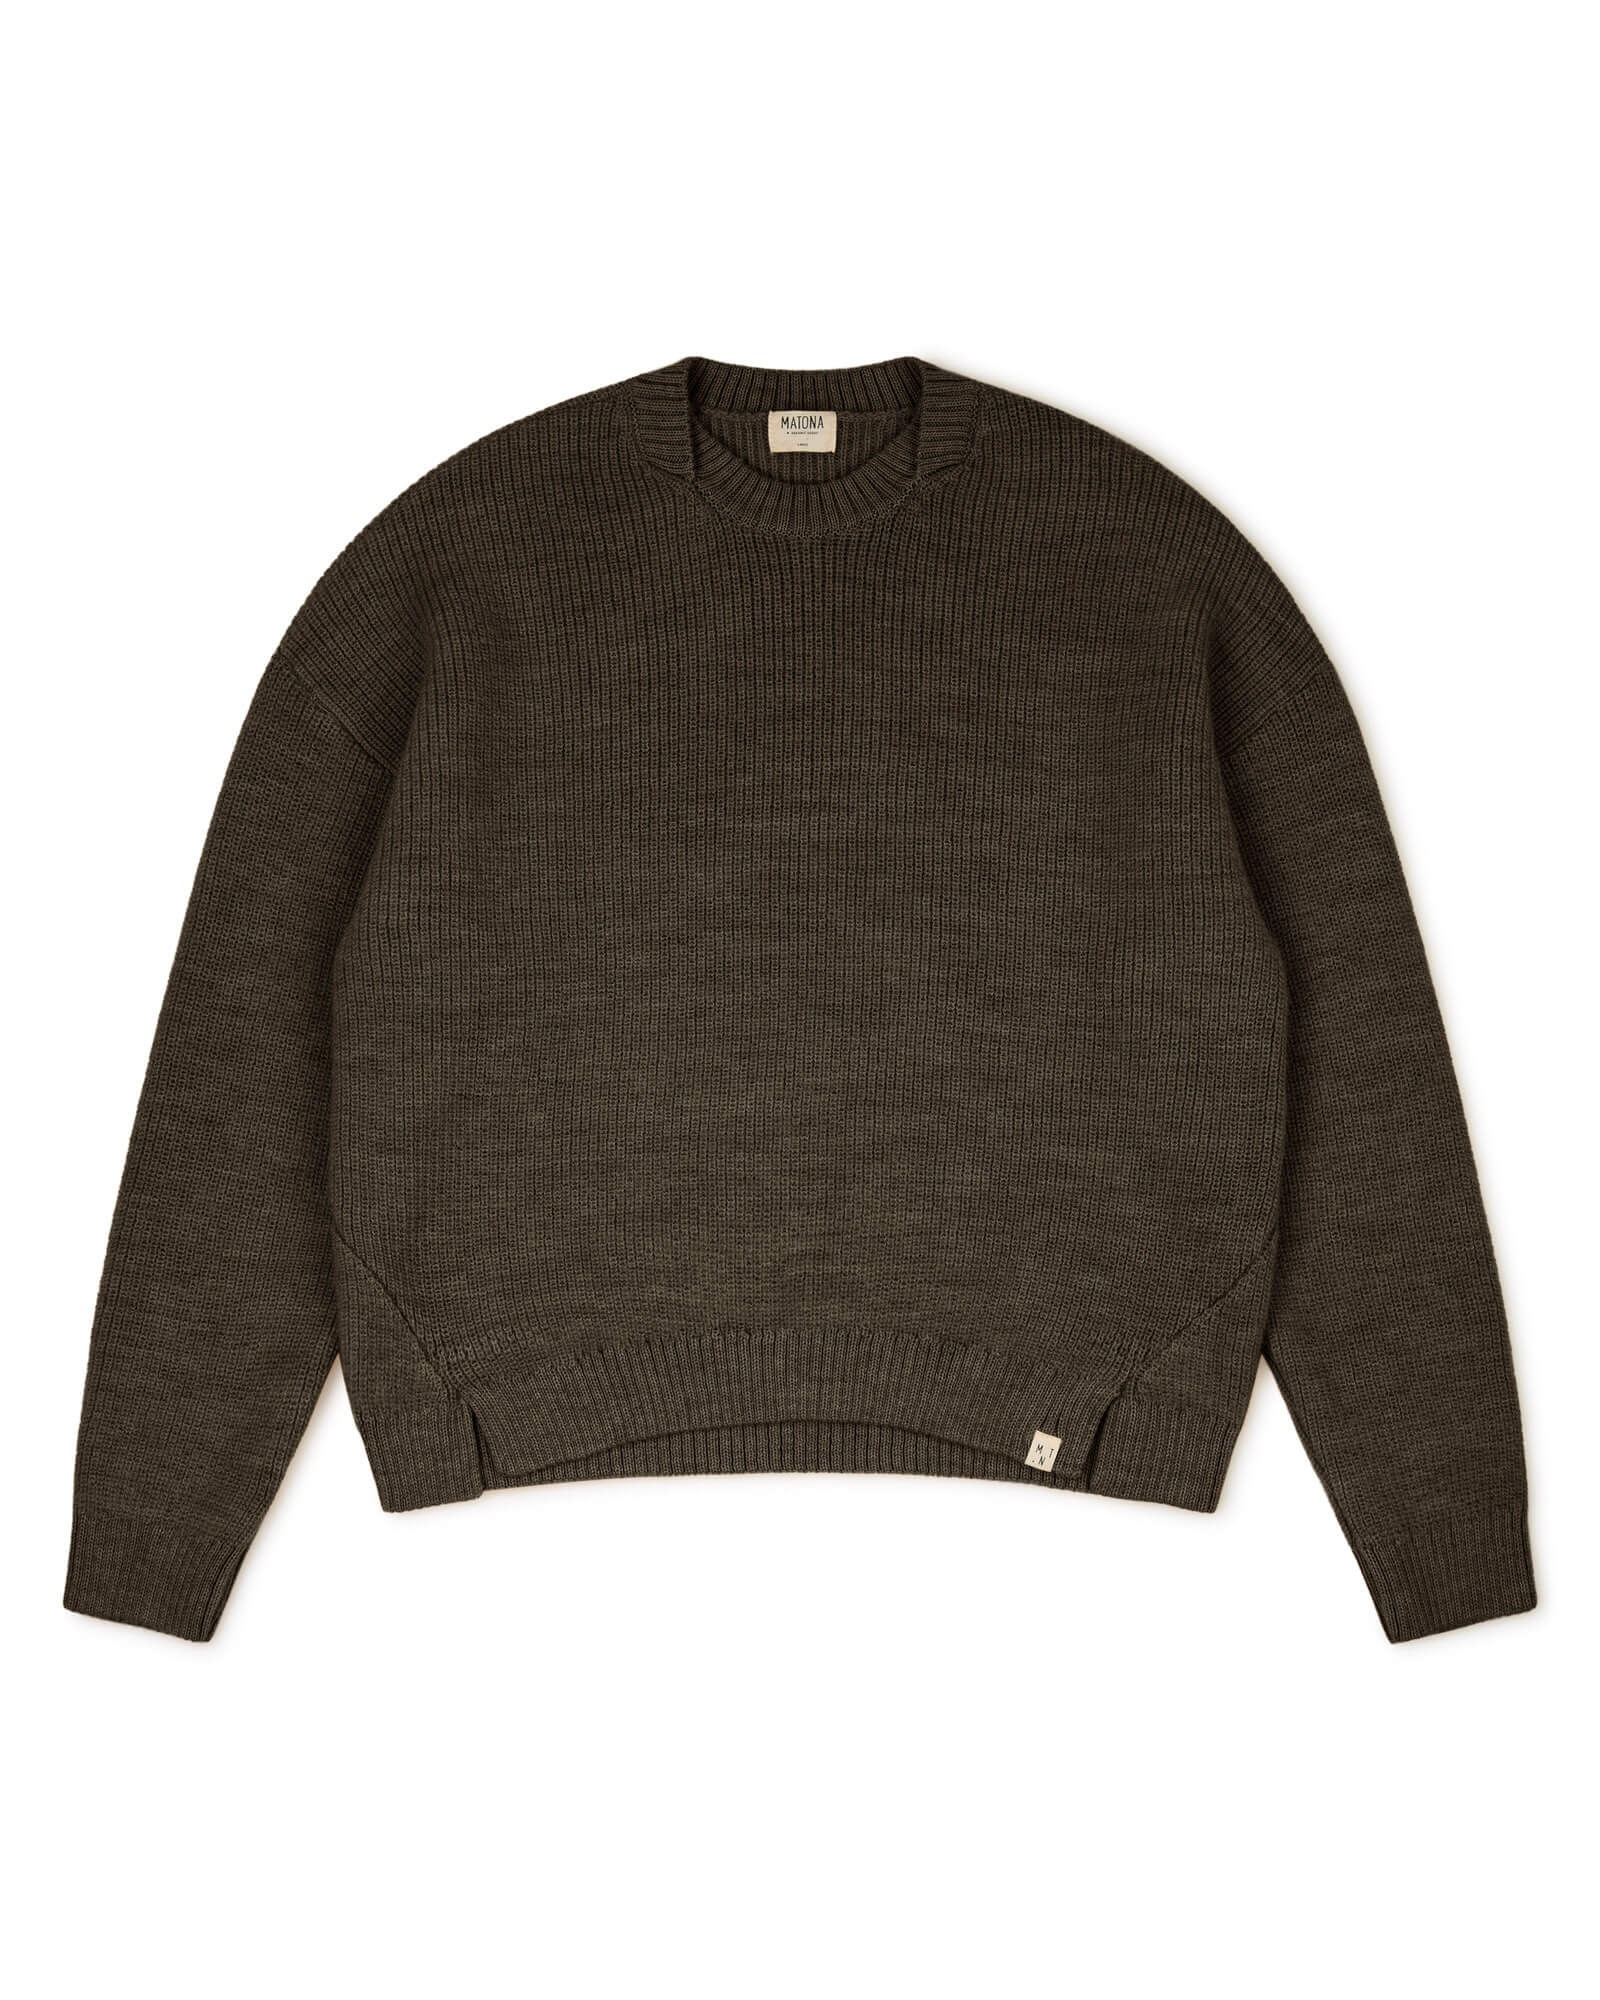 Brown sweater vulcano made of merino and alpaca yarn from Matona